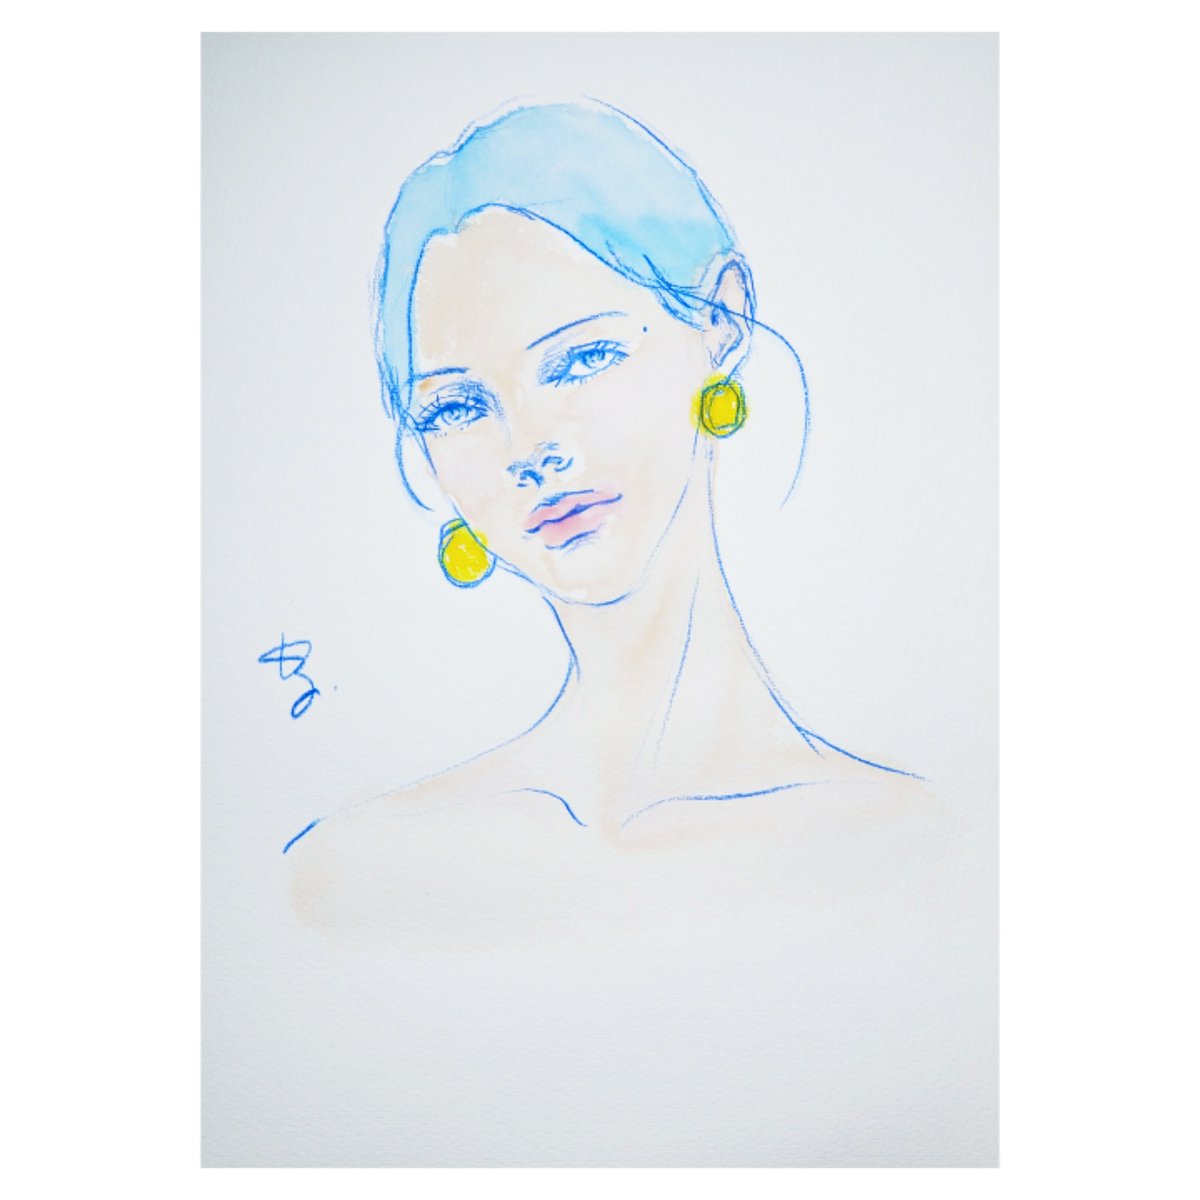 2024.0426
ー 幸せの結末？ ー
#drawing #dessin #artwork #illustration #womanportrait #blue #青 #イラスト #デッサン #福岡 #日課 #美人画 #人物画 #kazuko_sketch_